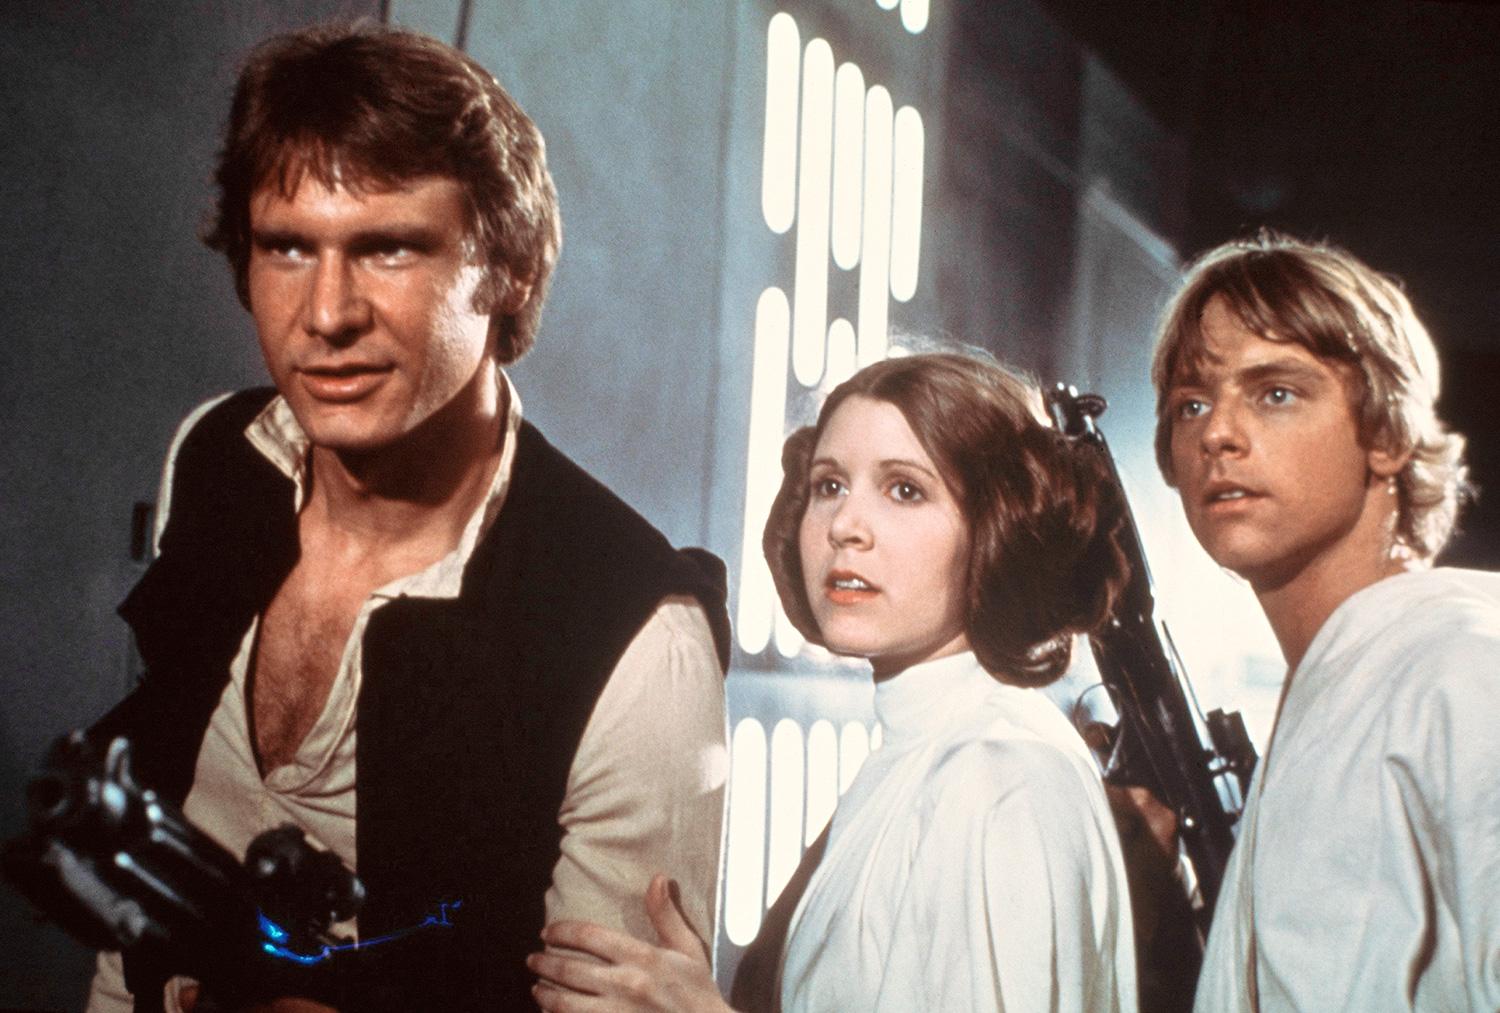 Harrison Ford, Carrie Fisher och Mark Hamill i rollerna som både gav skjuts (för Harrison Ford) och stjälpte deras karriärer (för Fisher och Hamill).